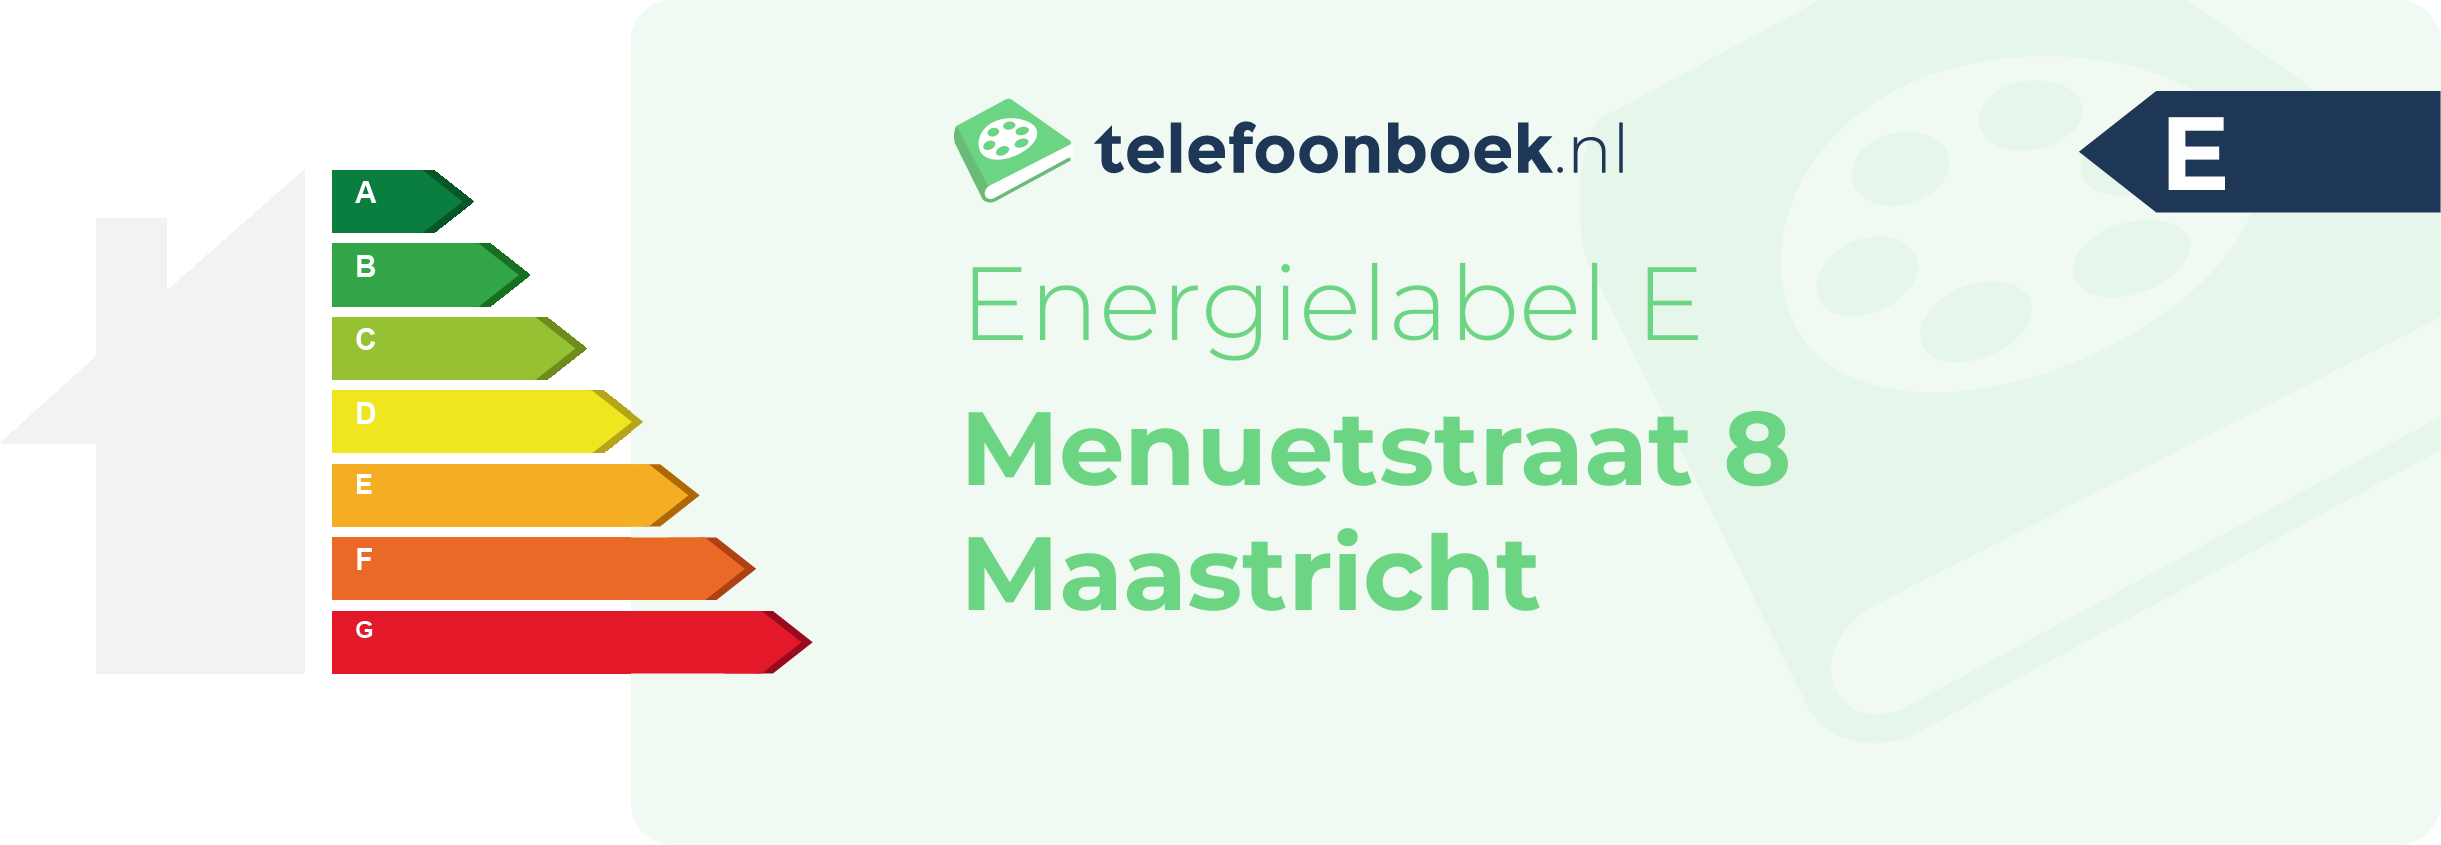 Energielabel Menuetstraat 8 Maastricht